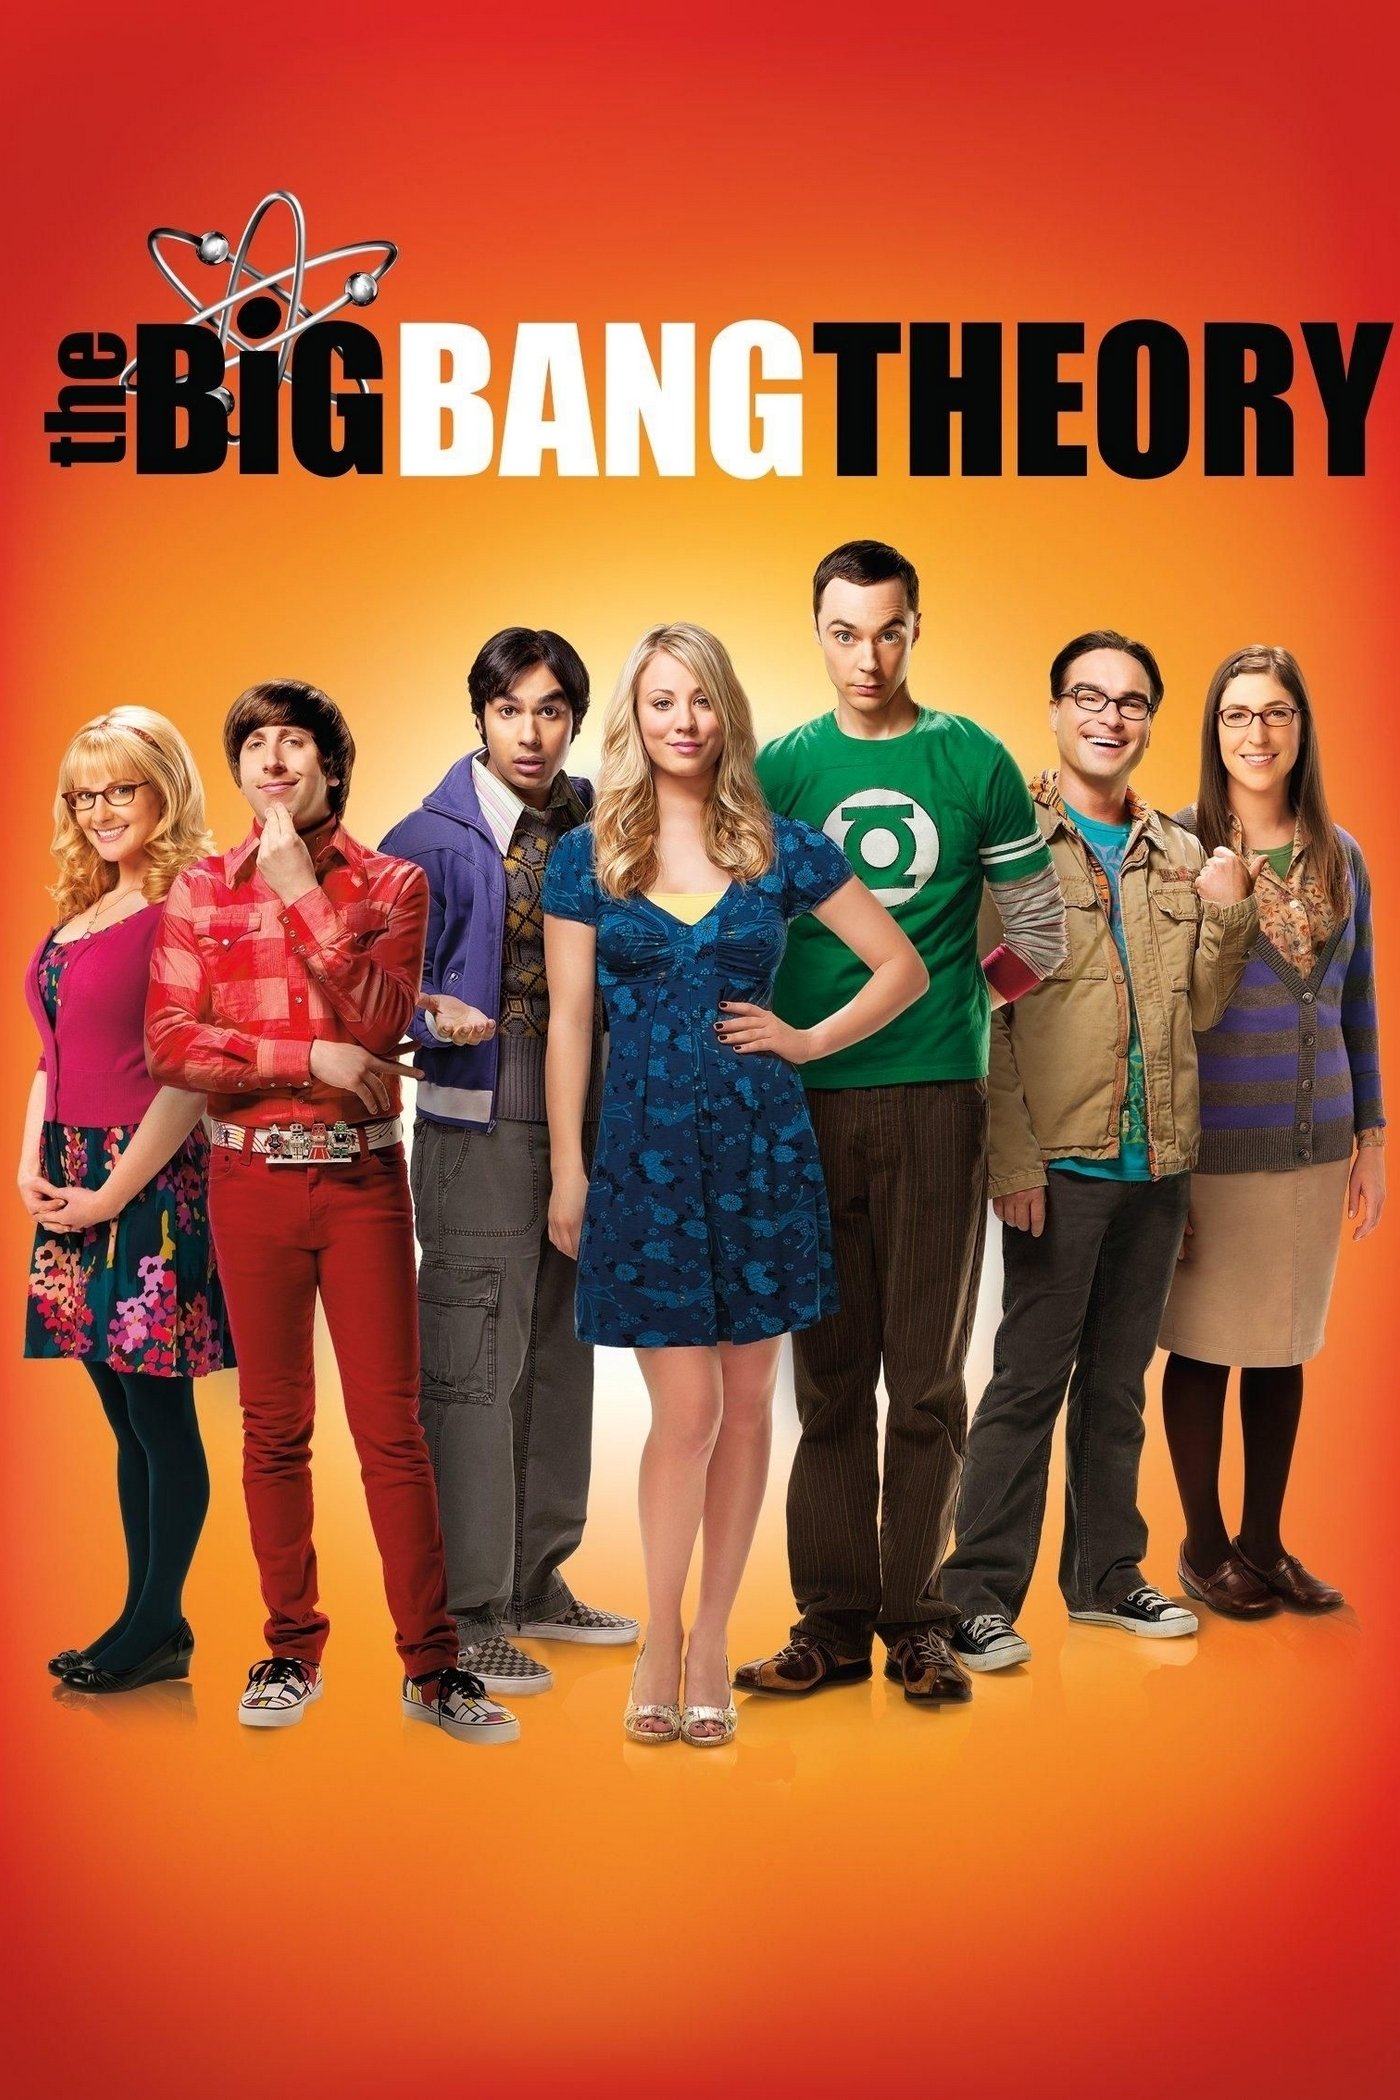 Big Bang Theory Full Movie Download